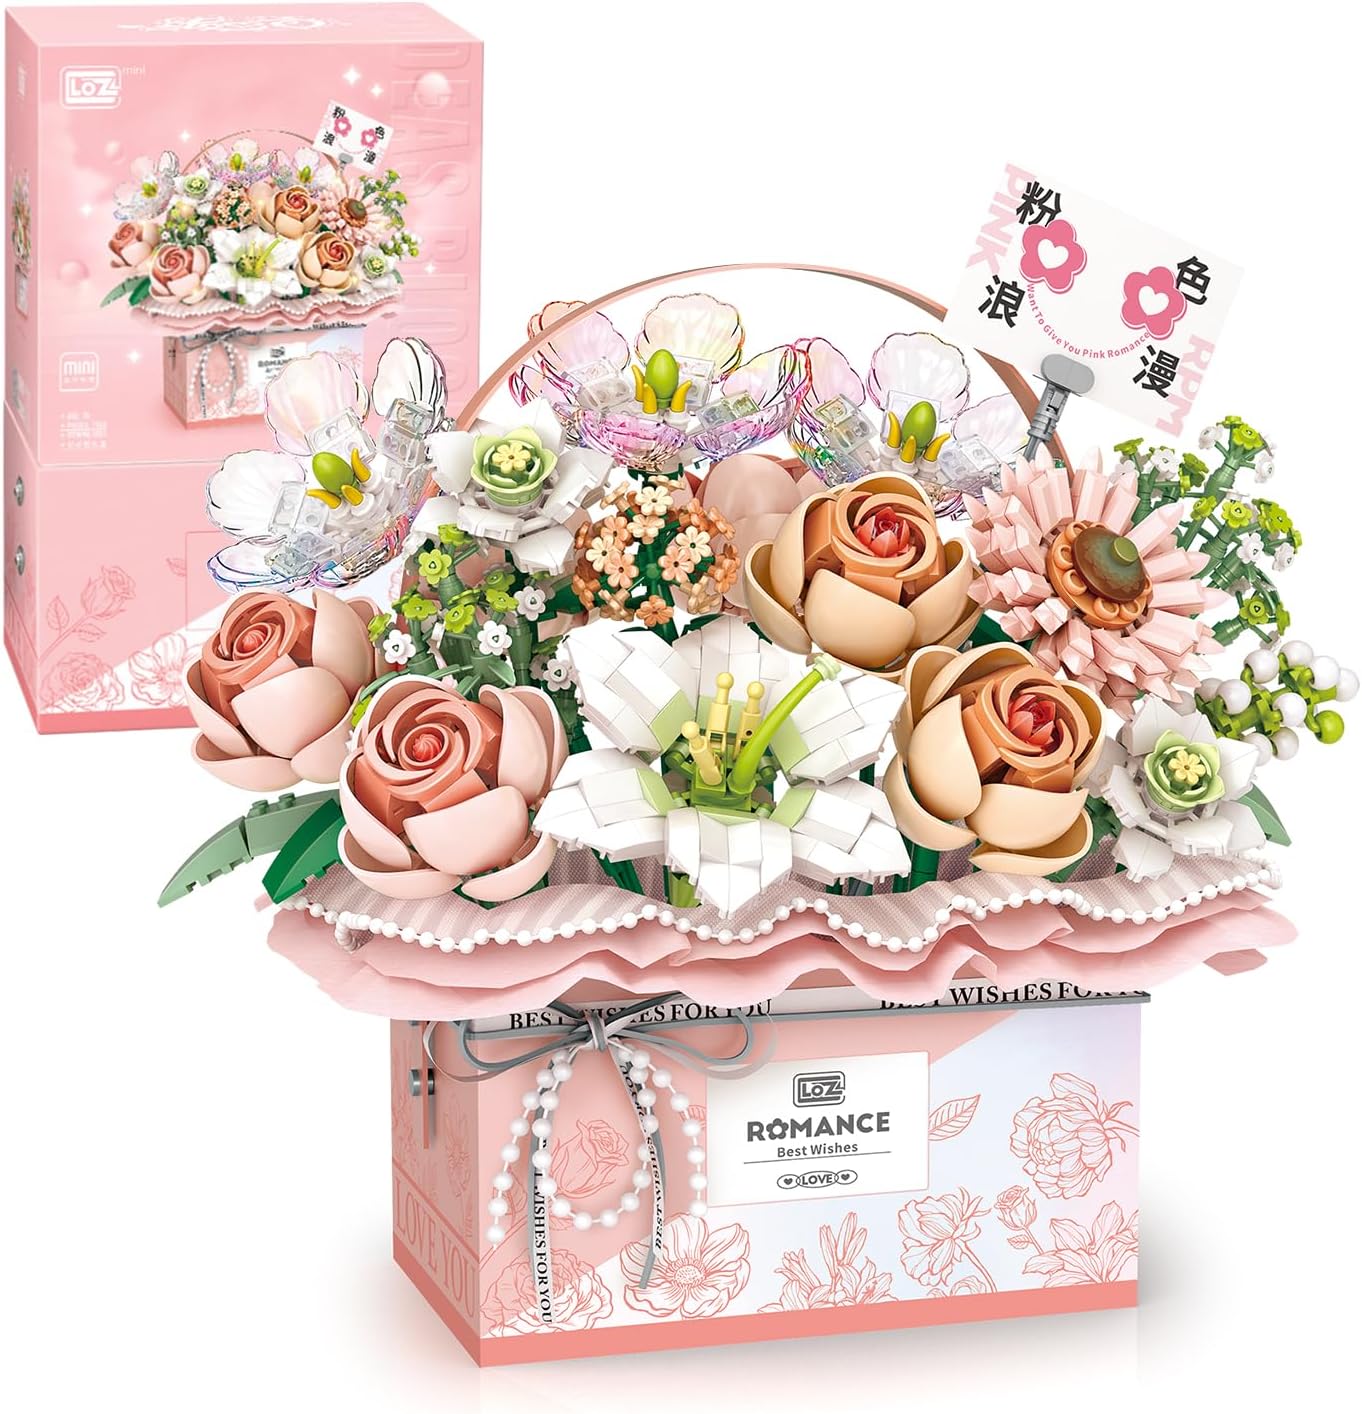 Конструктор с подсветкой LOZ Mini Block Eternal Flower Romance, розовый, 1212 деталей креативная коробка для колец с цветком розы бархатный держатель с цветами подарочная коробка для свадьбы помолвки дня святого валентина